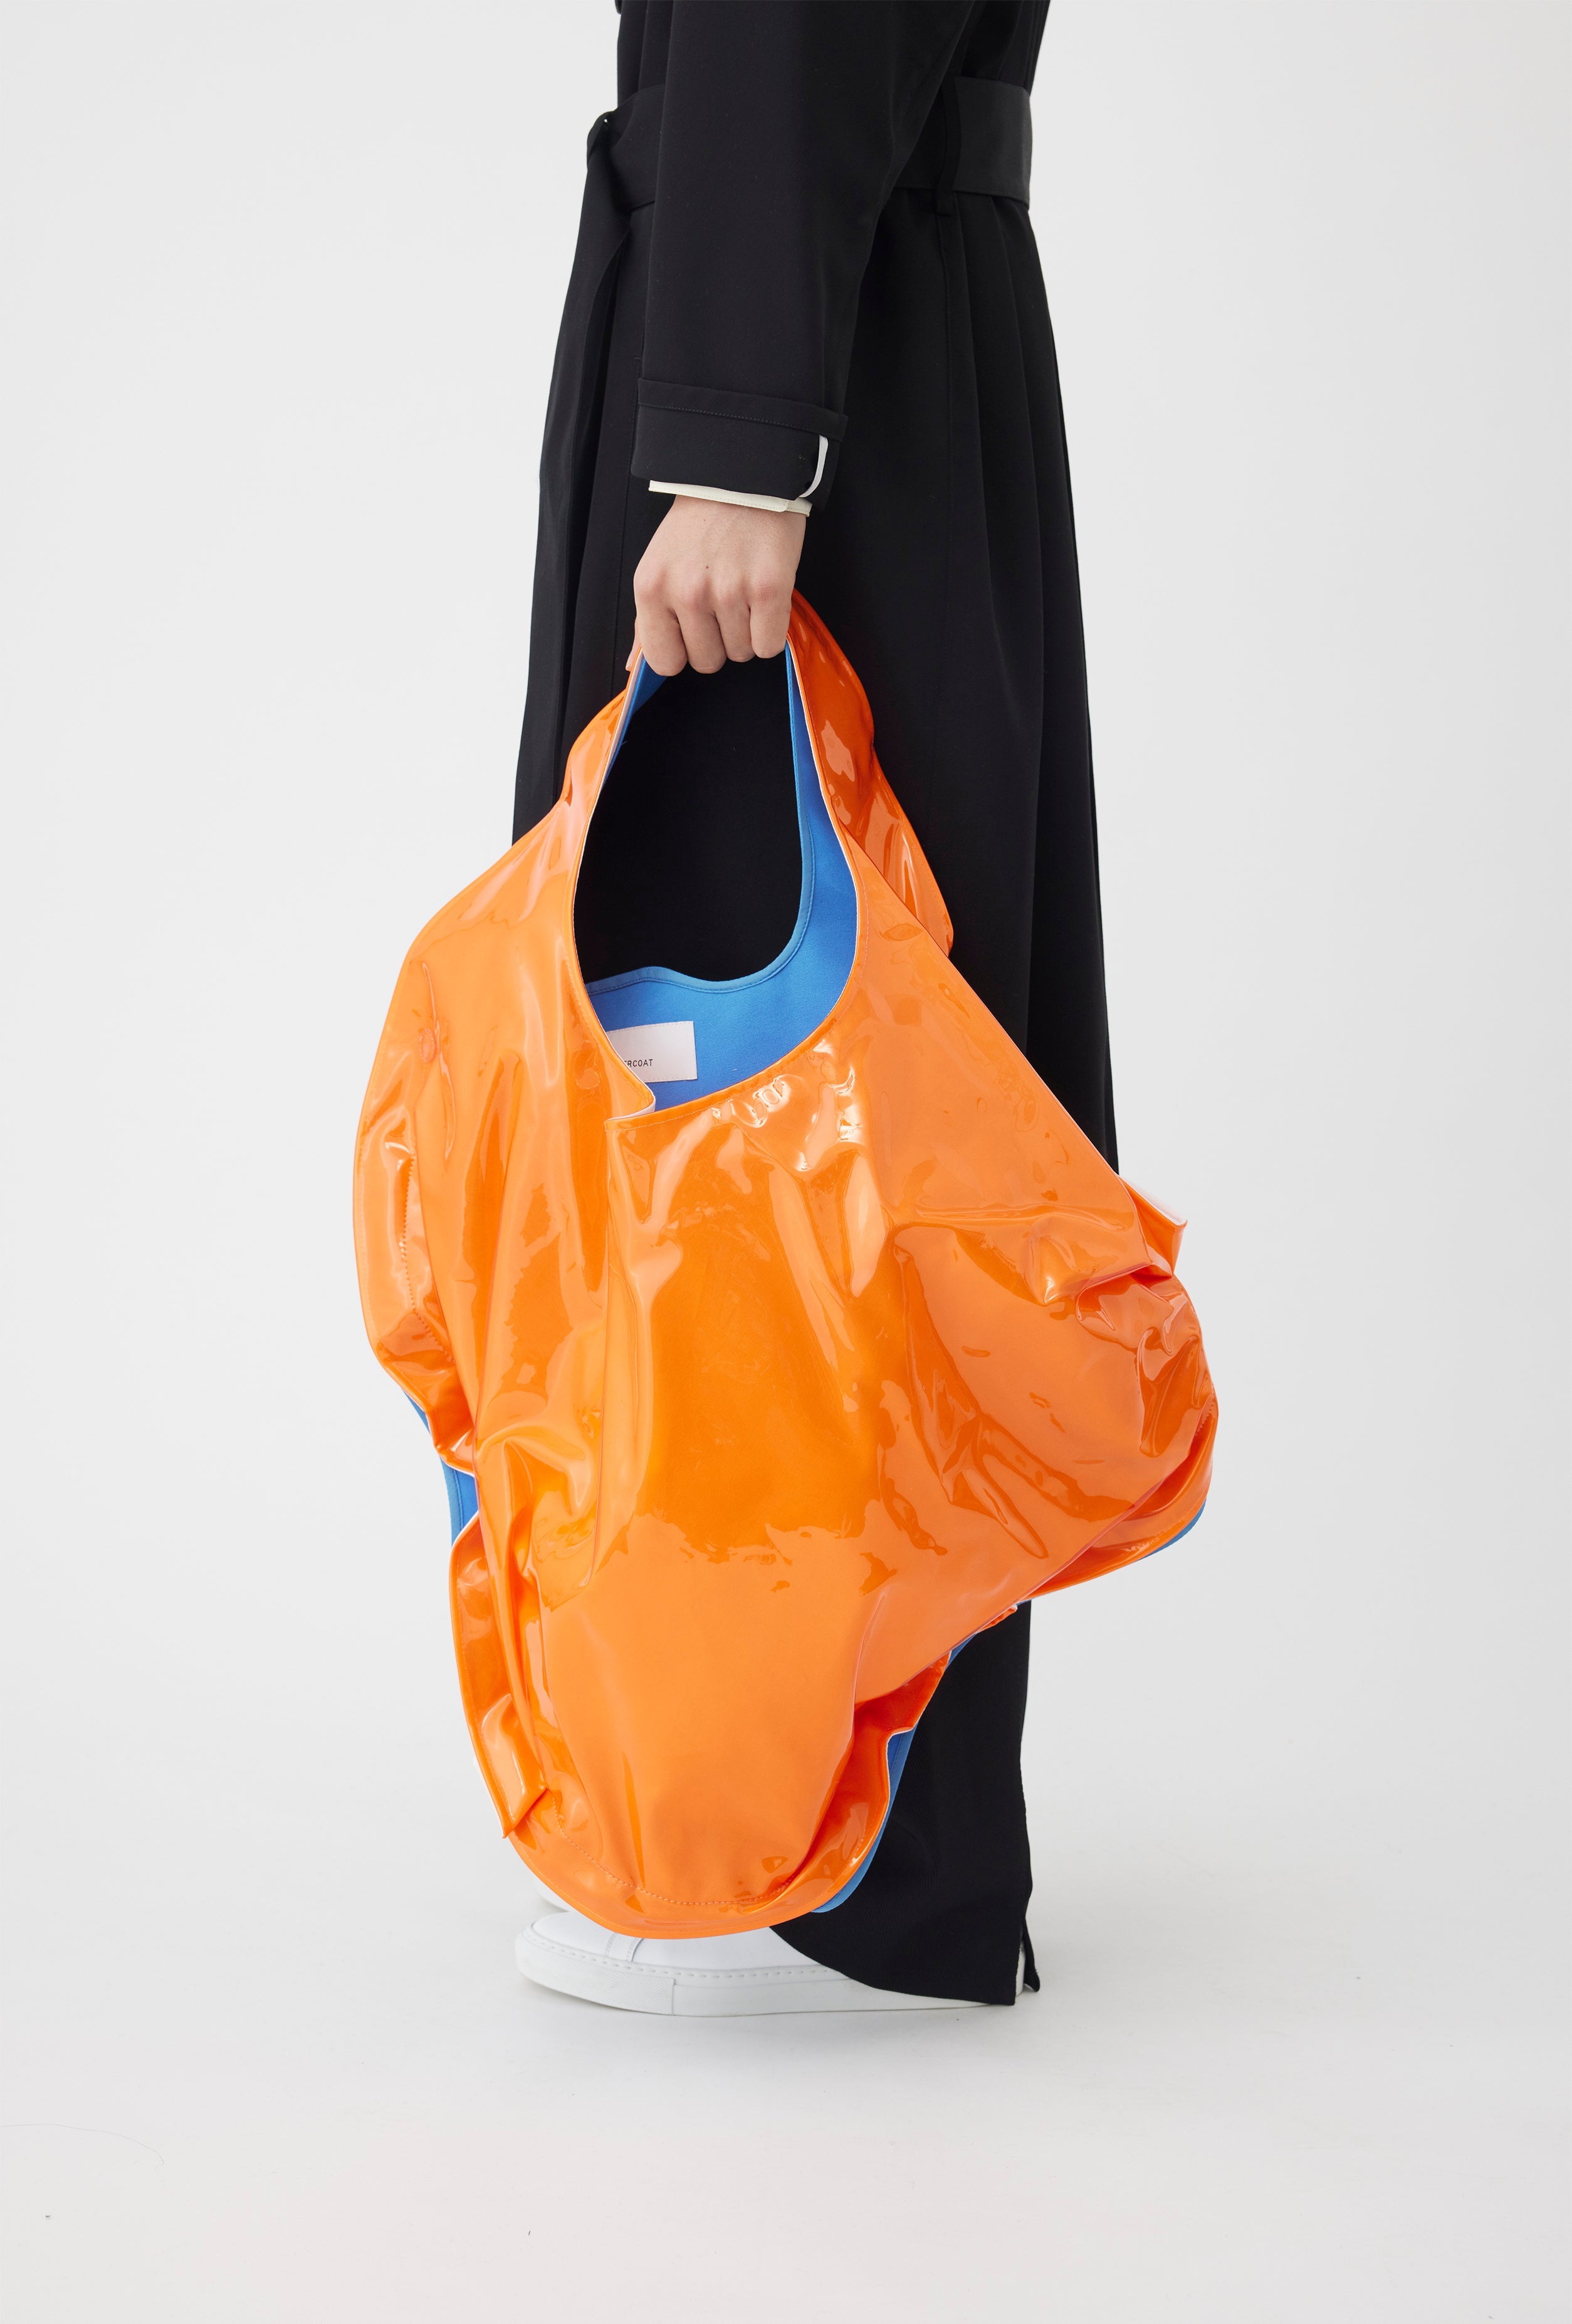 Tote Bag in Orange X Light Blue